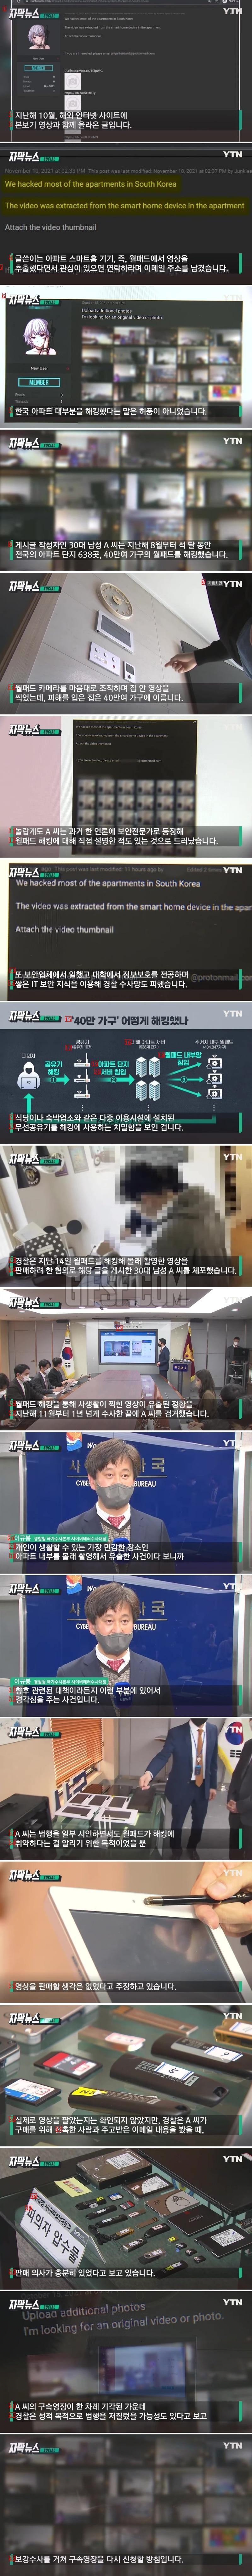 韓国のマンションの大部分がハッキングの虚勢ではなかったあの言葉news。